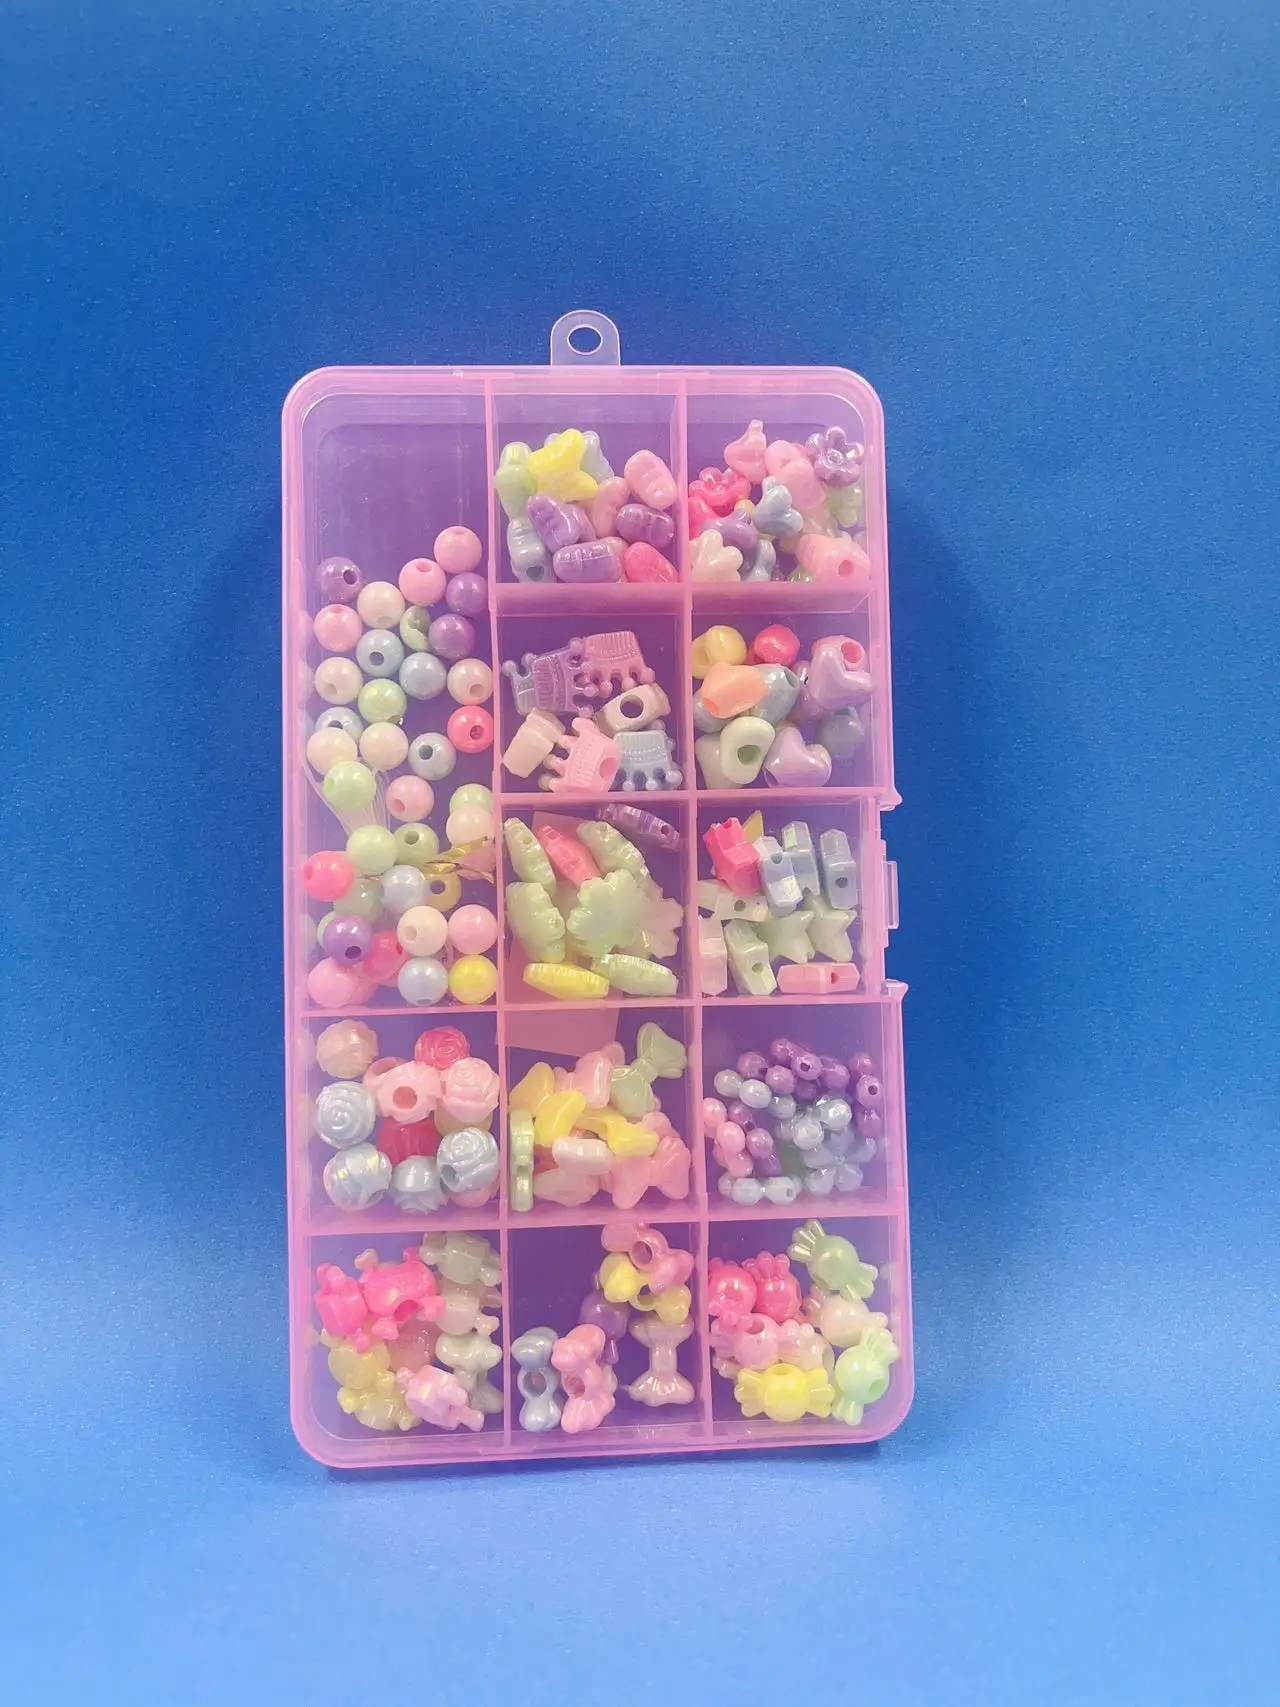 

Conjunto de acessórios de joias faça você mesmo com design de miçangas coloridas aleatórias 1 caixa TLQ10253-7 113g